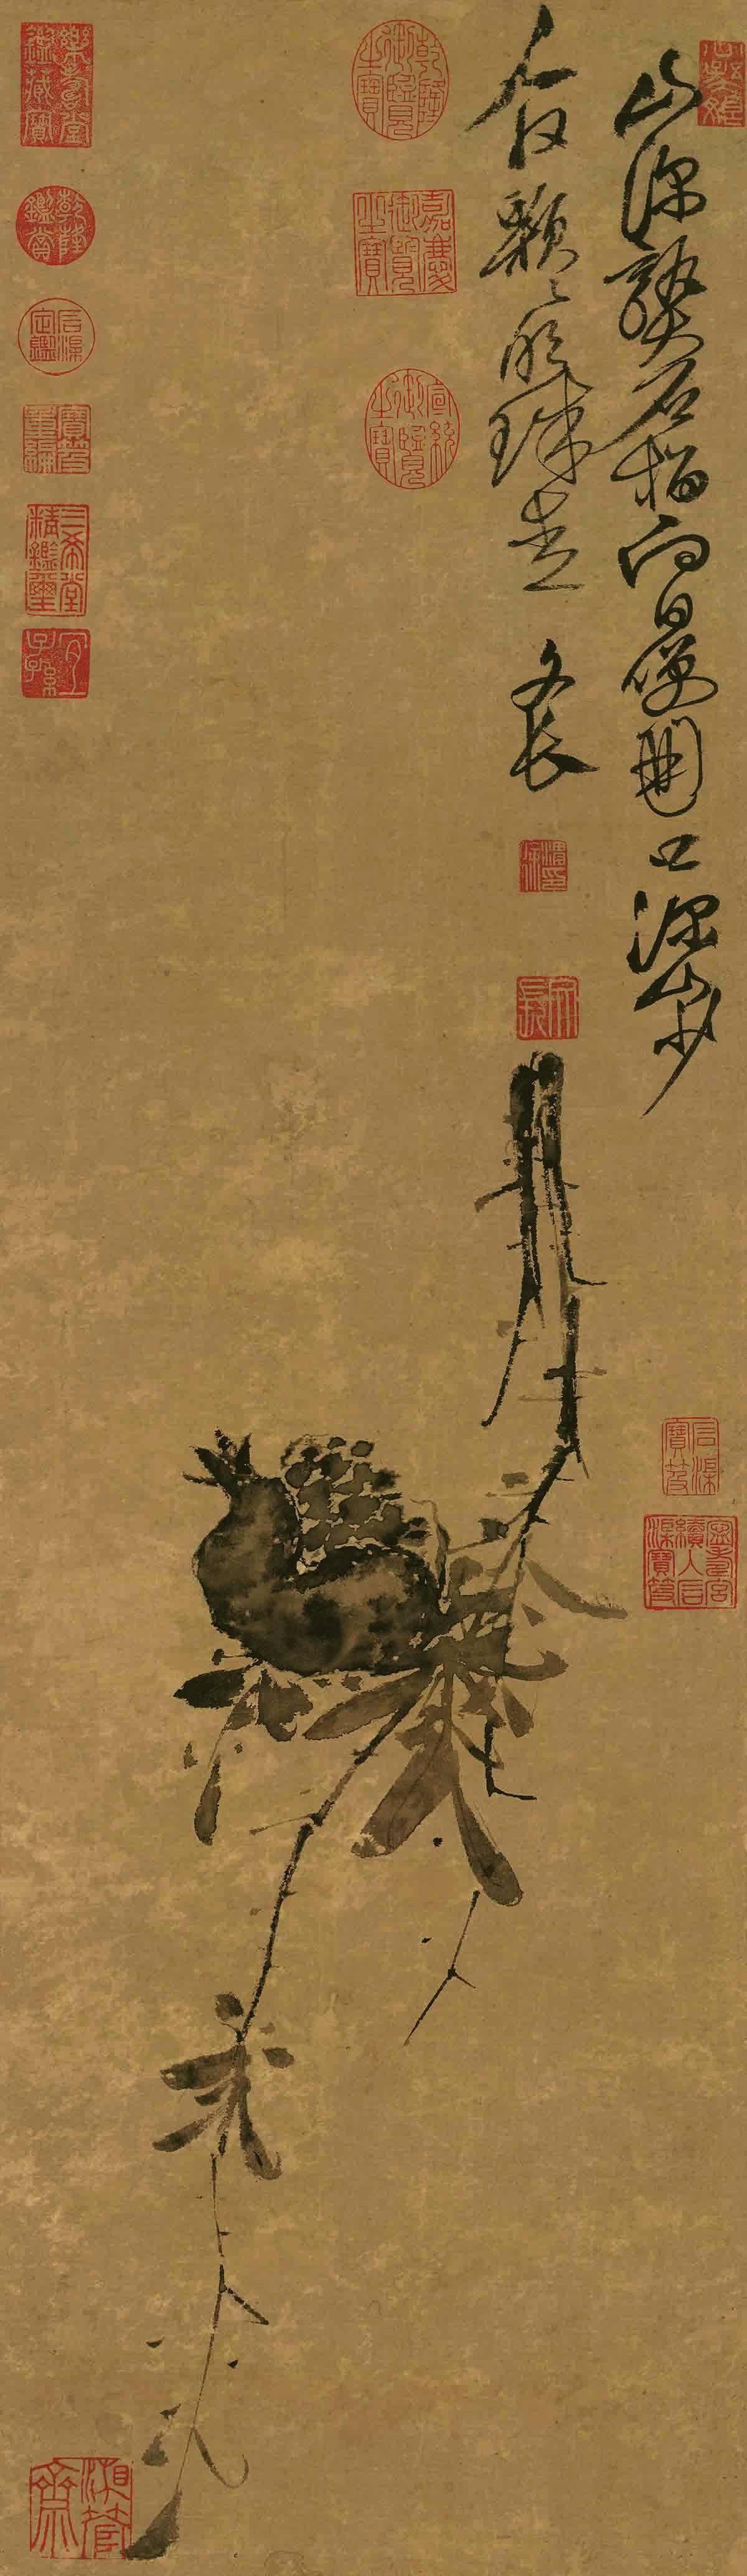 明 徐渭 榴实图纸本(二版)91.4x26.5